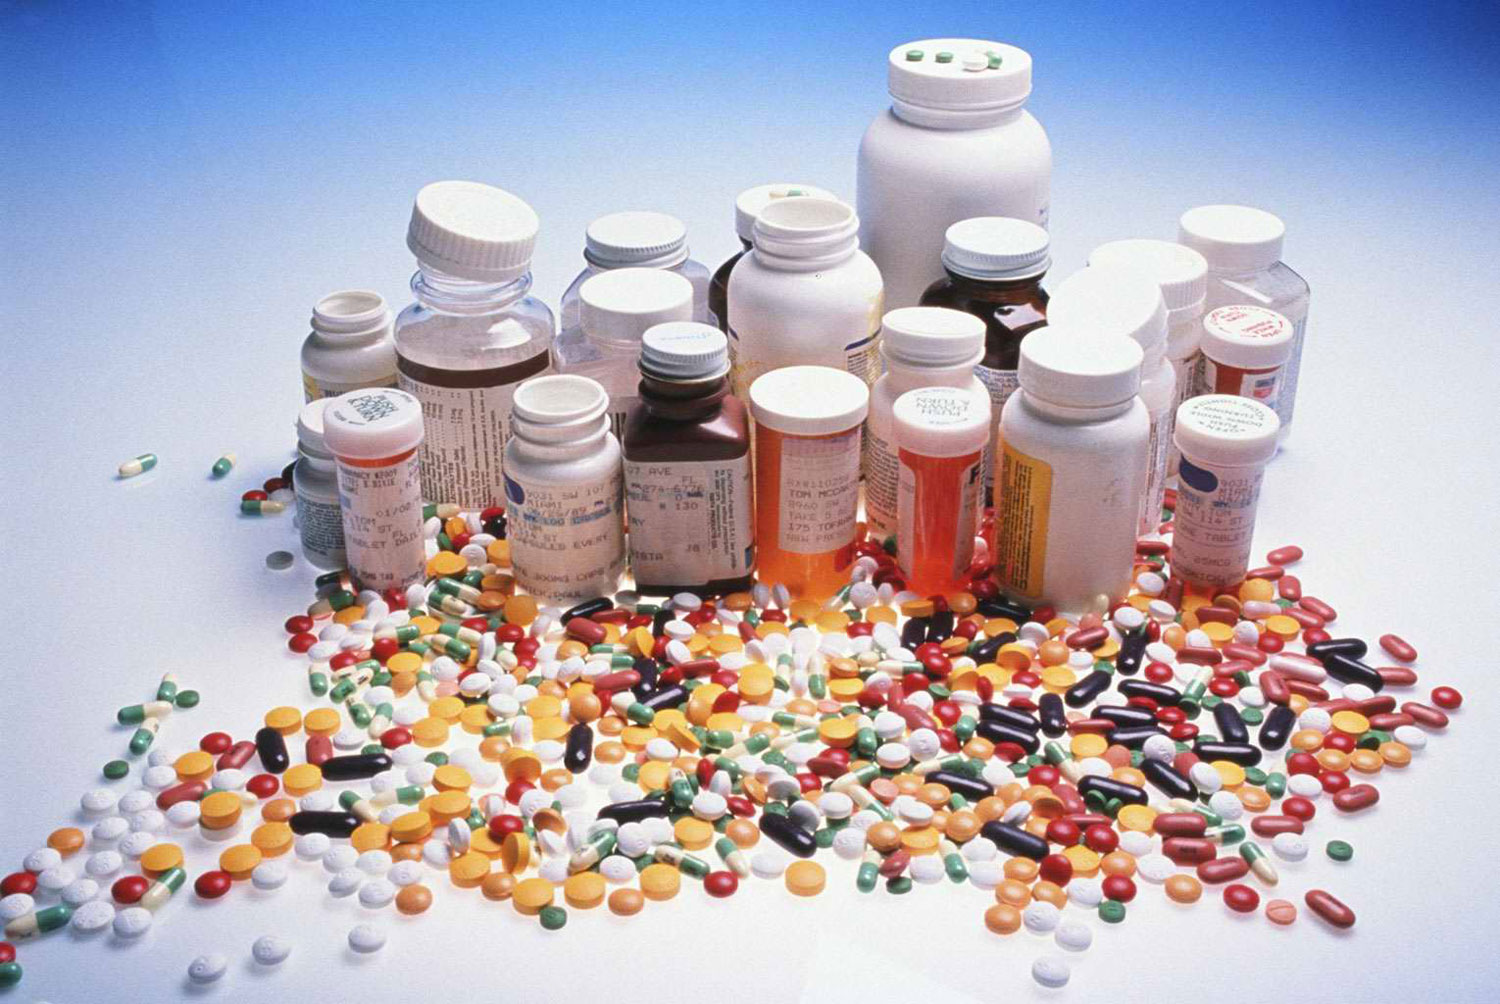 За закупку лекарств по завышенным ценам чиновники Минздрава могут ответить перед судом 